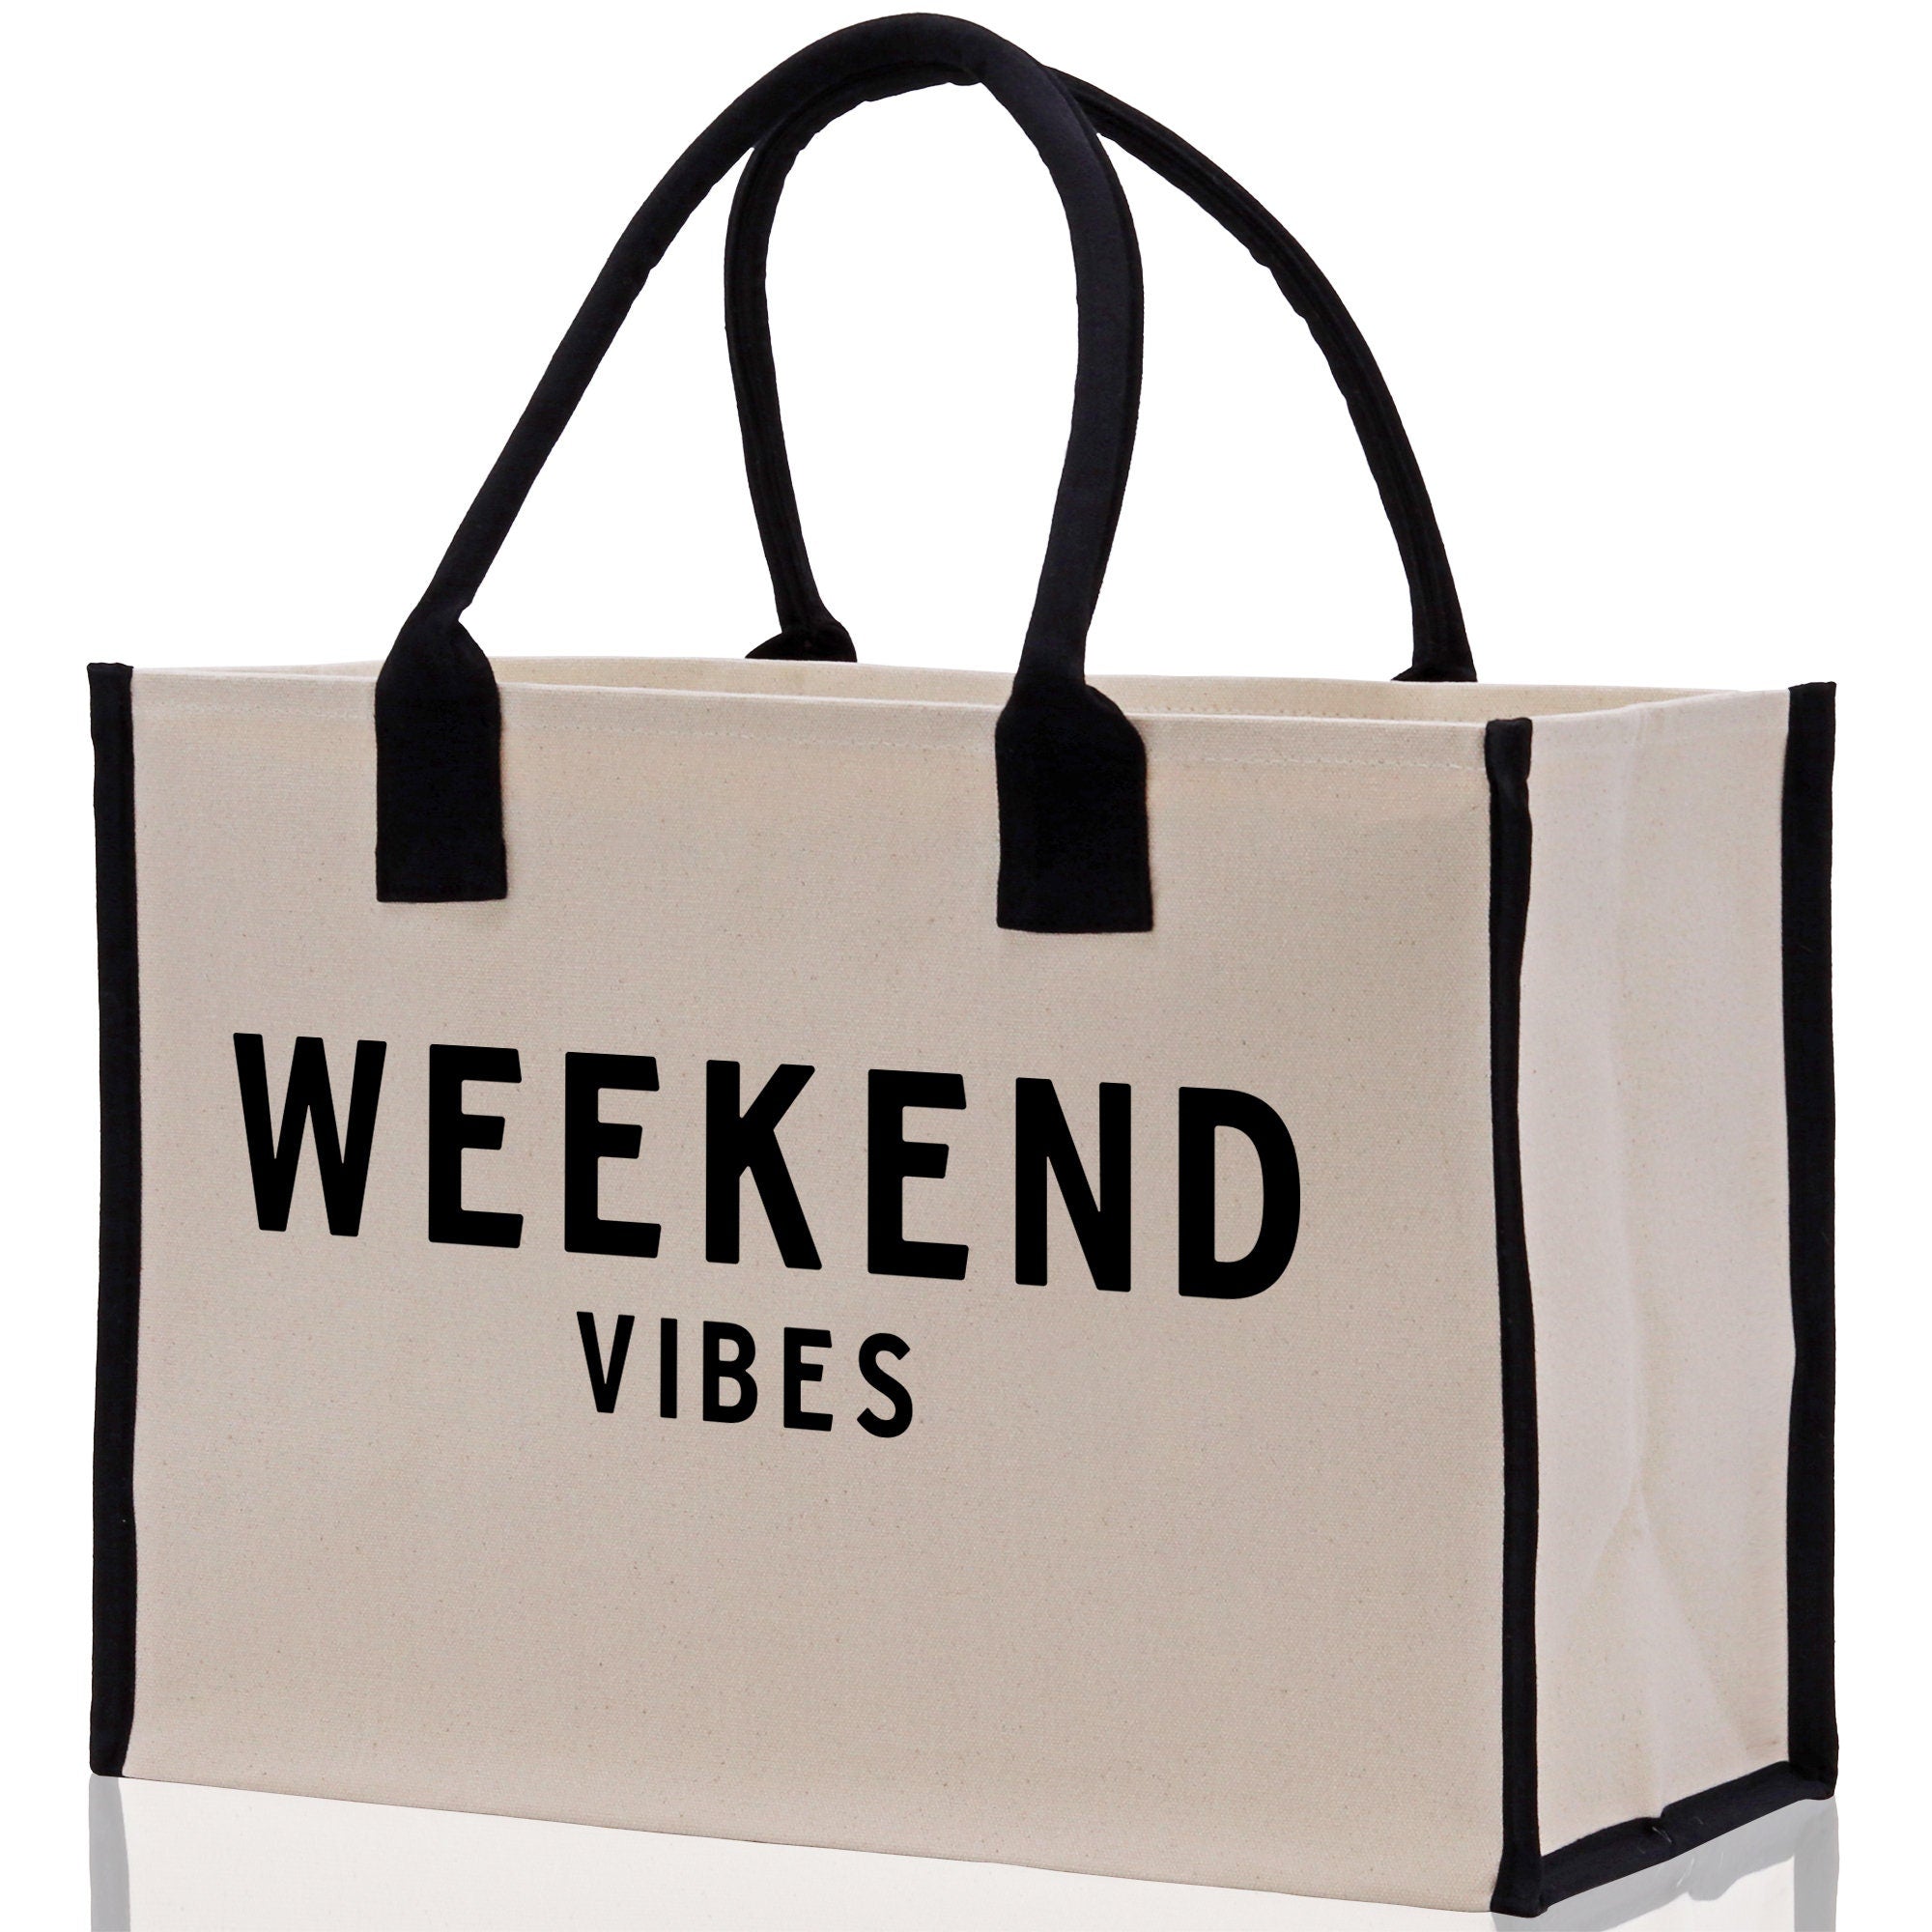 Weekend Vibes Beach Tote Bag - Large Chic Tote Bag - Gift for Her - Girls Weekend Tote - Weekender Bag - Weekend Tote - Weekend Vibes Bag